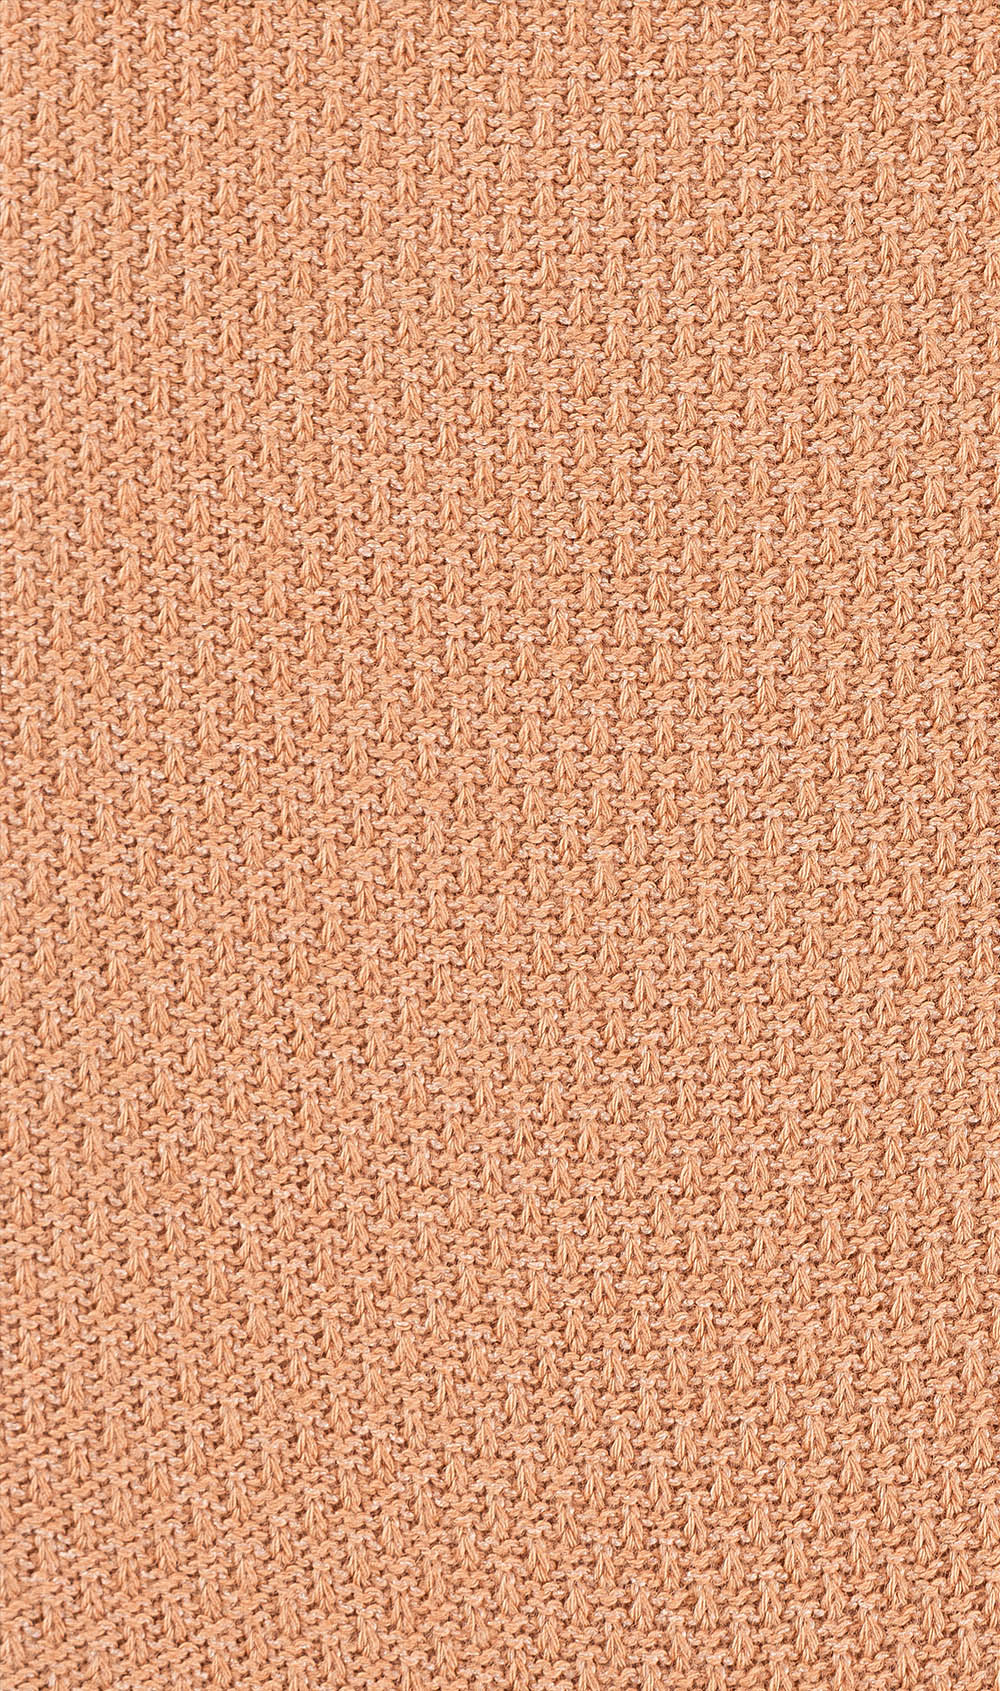 Khaki Brown Textured Socks Pattern